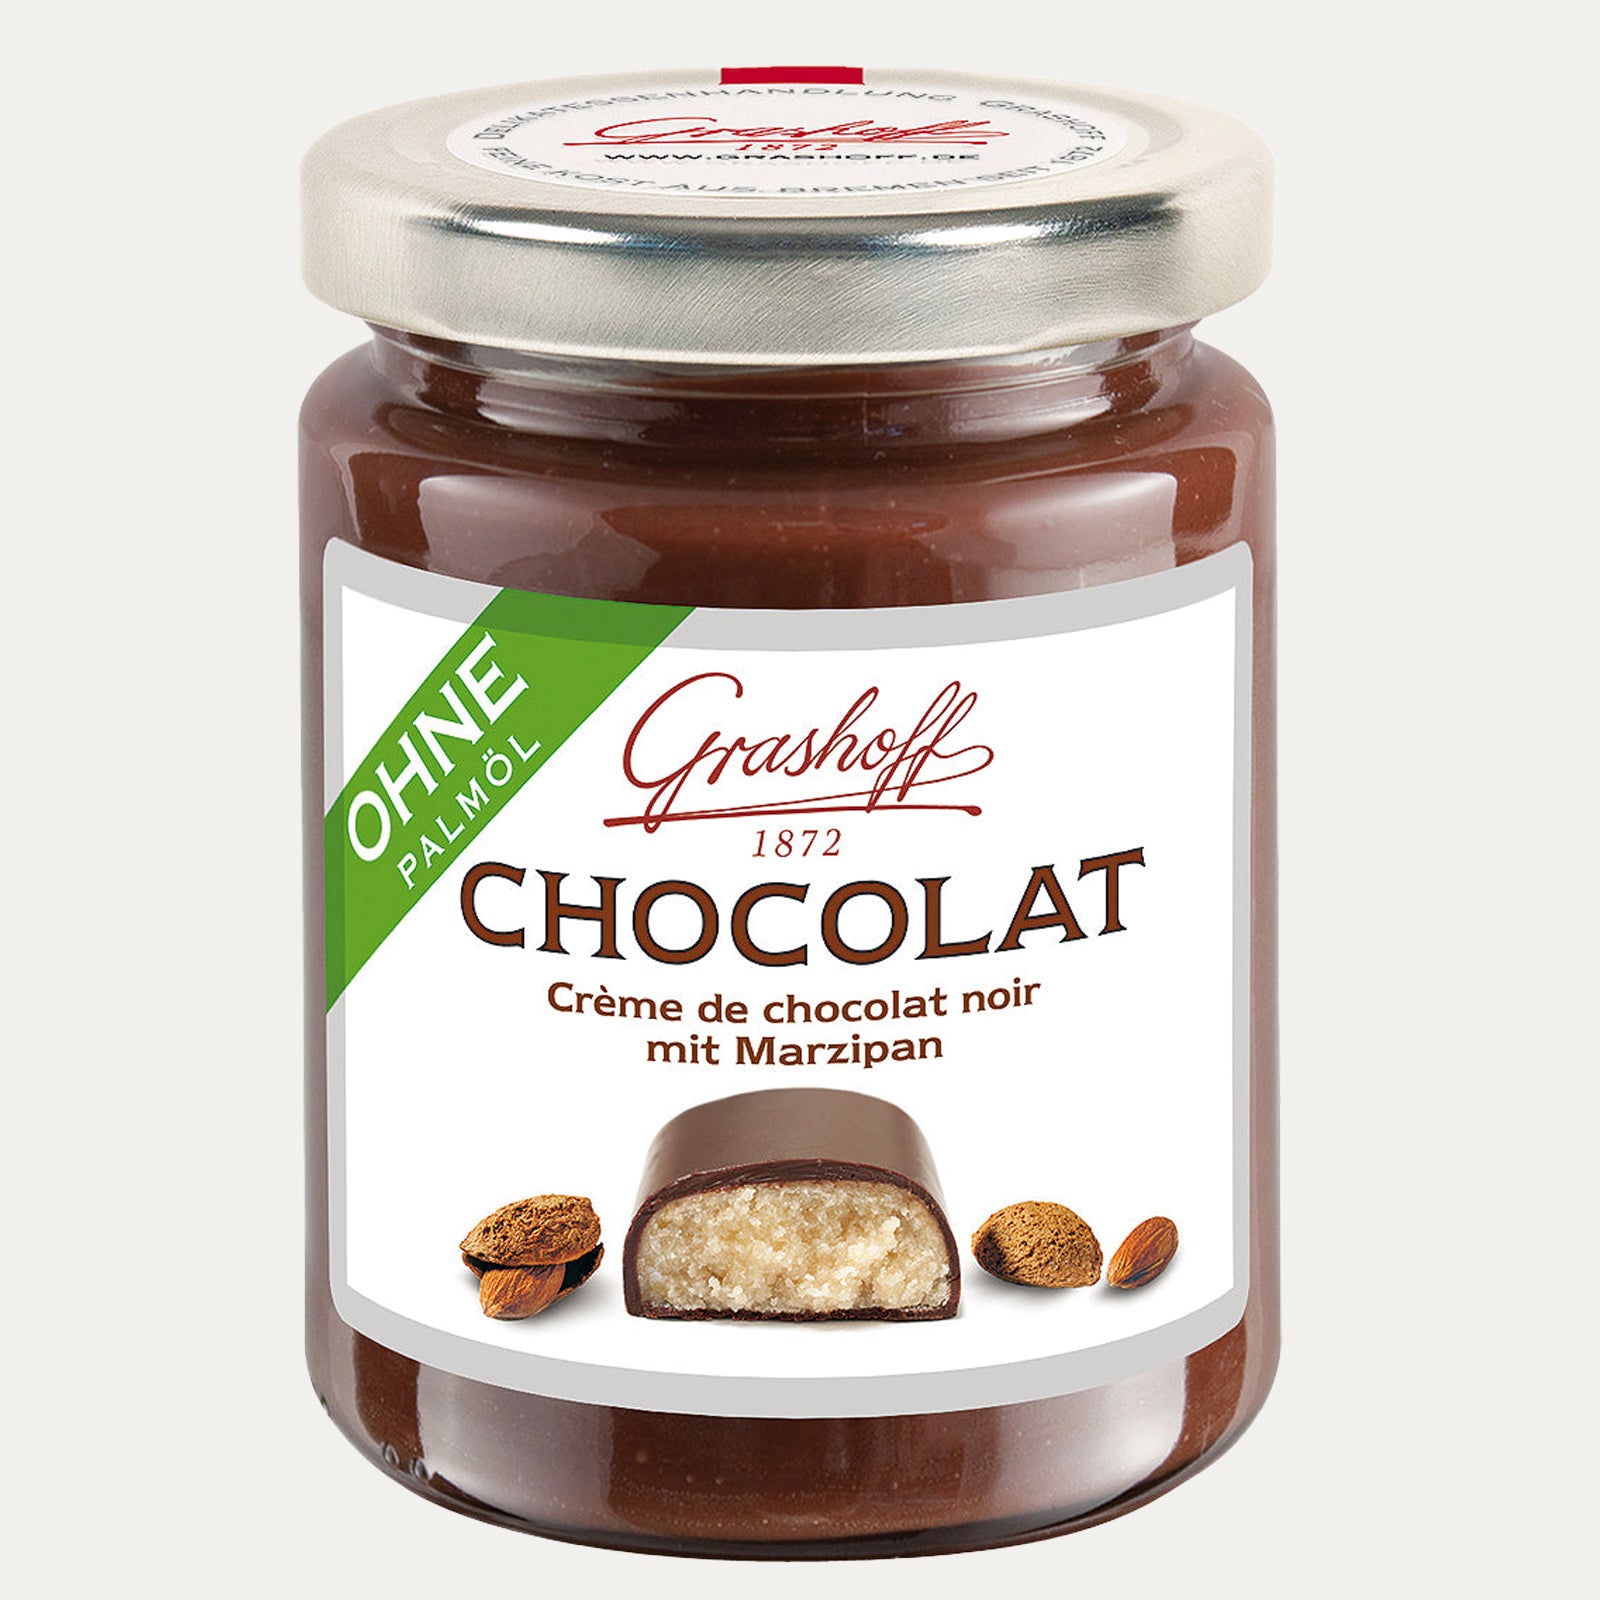 Dunkle Chocolat mit Marzipan – Schokoladencreme 250g